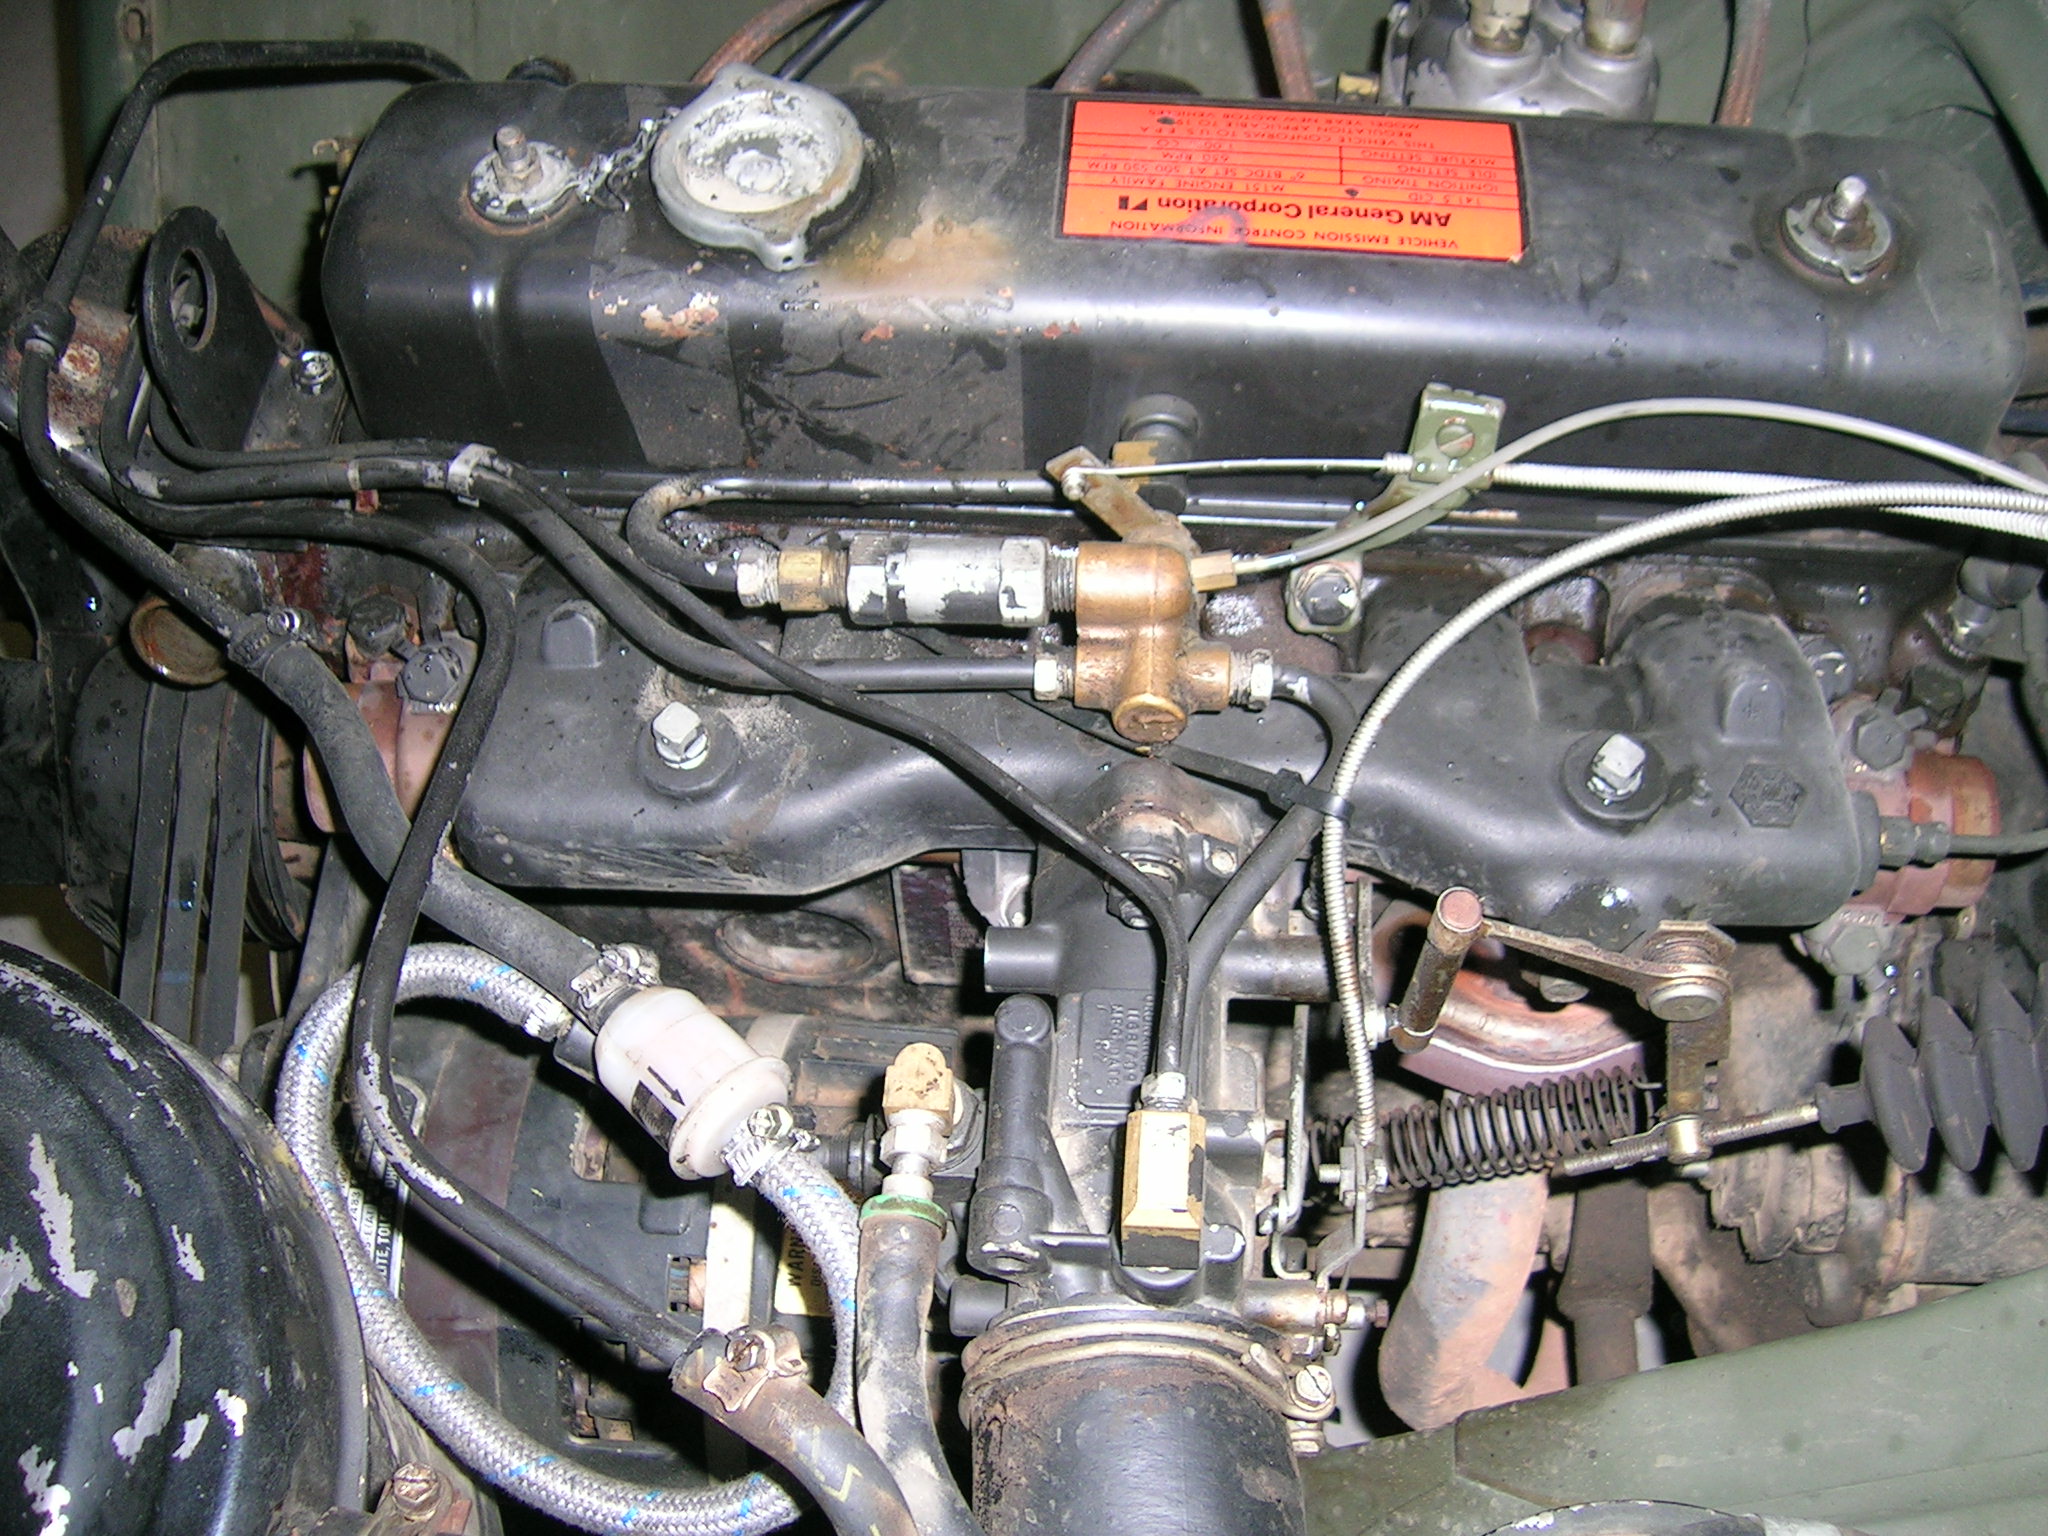 So sah der Motorraum des M151 A2 vorher aus